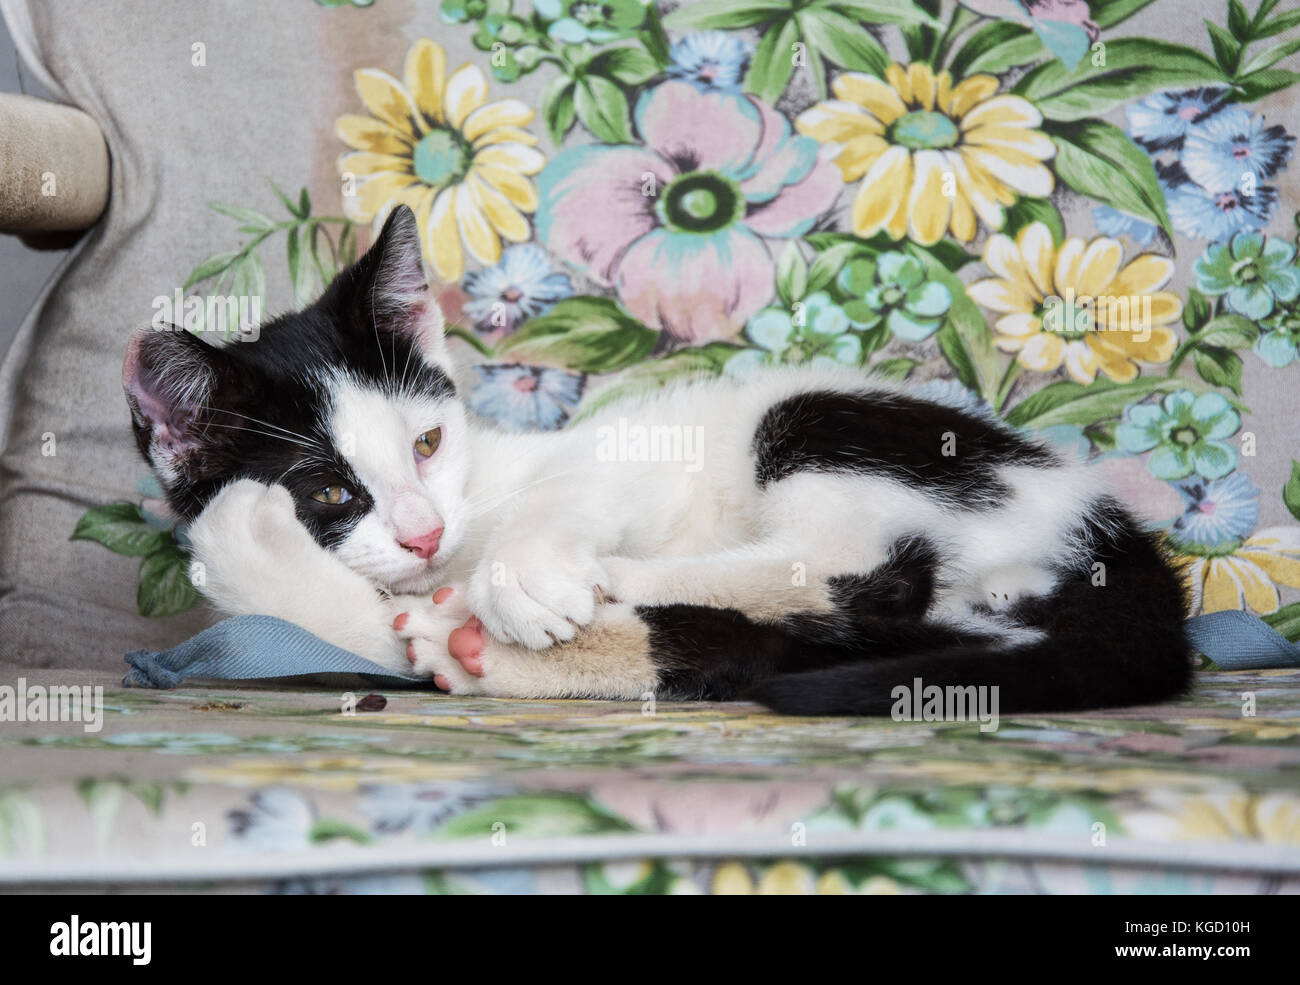 En blanco y negro gatito tumbado en una silla cubierta con estampados de flores Foto de stock